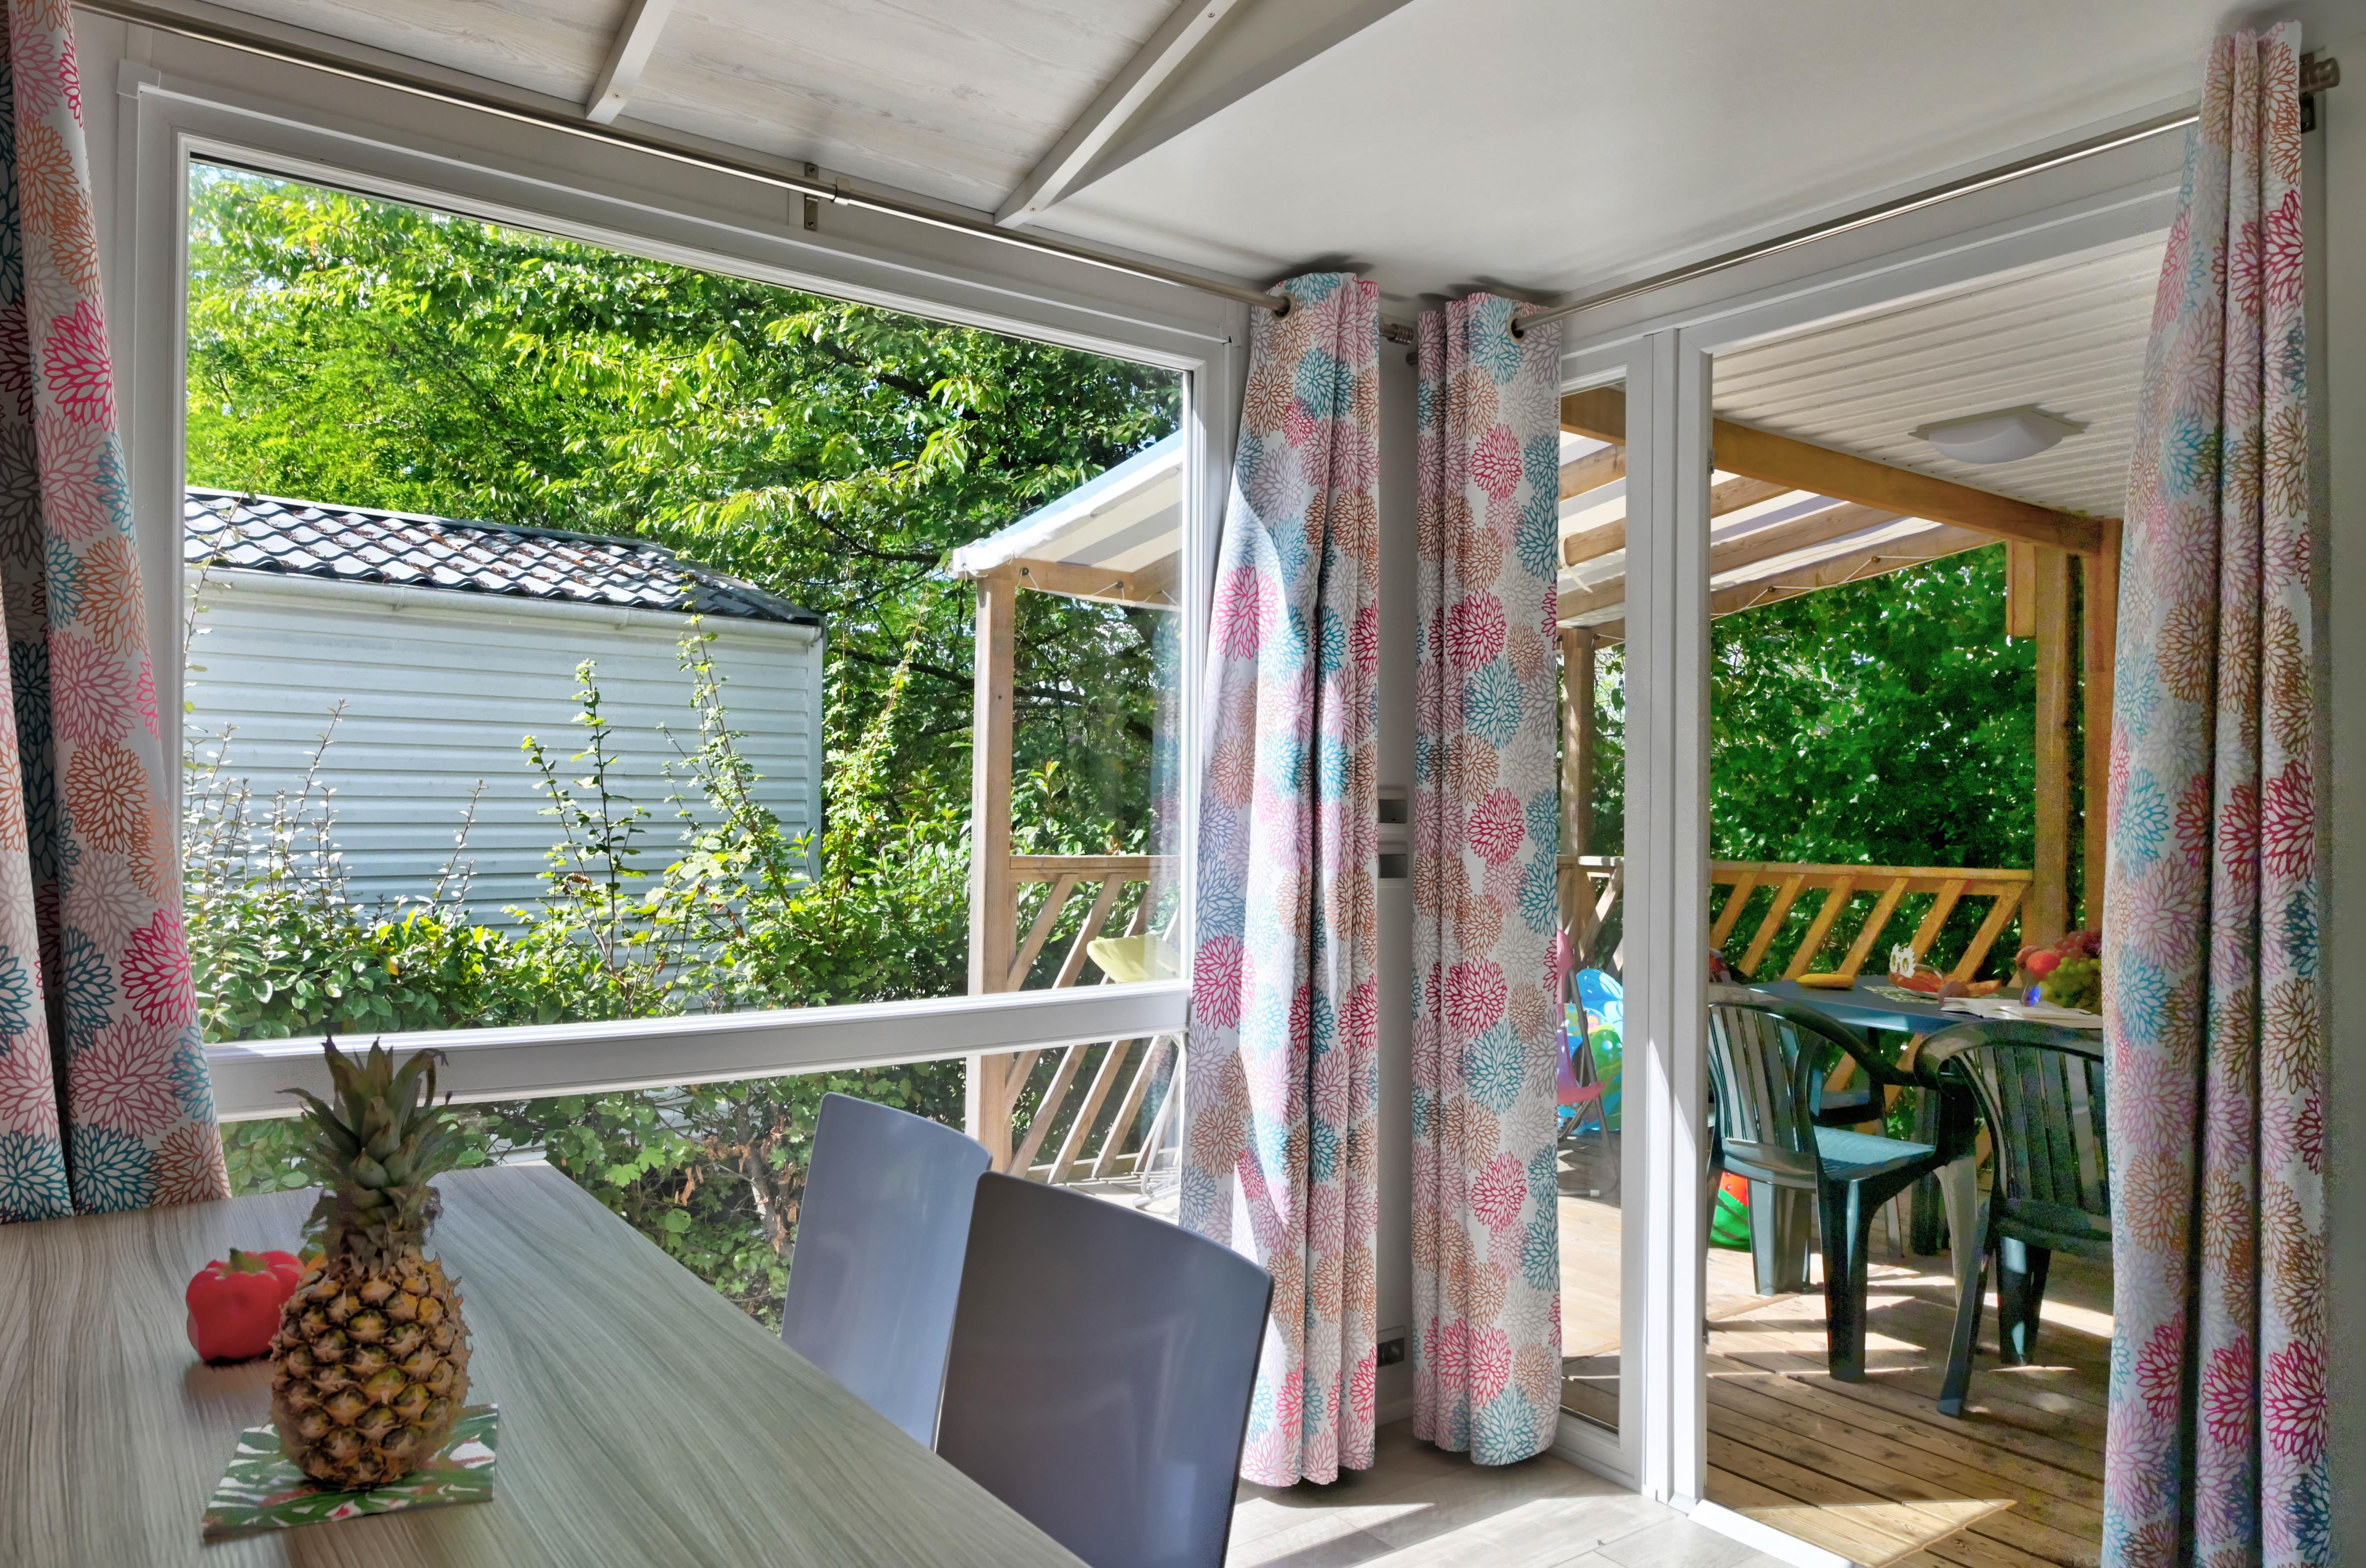 Mietunterkunft - Mobilheim Premium 27M² (2 Zimmer) + Überdachte Terrasse + Wasche Geschirr + Television - Flower Camping La Chataigneraie